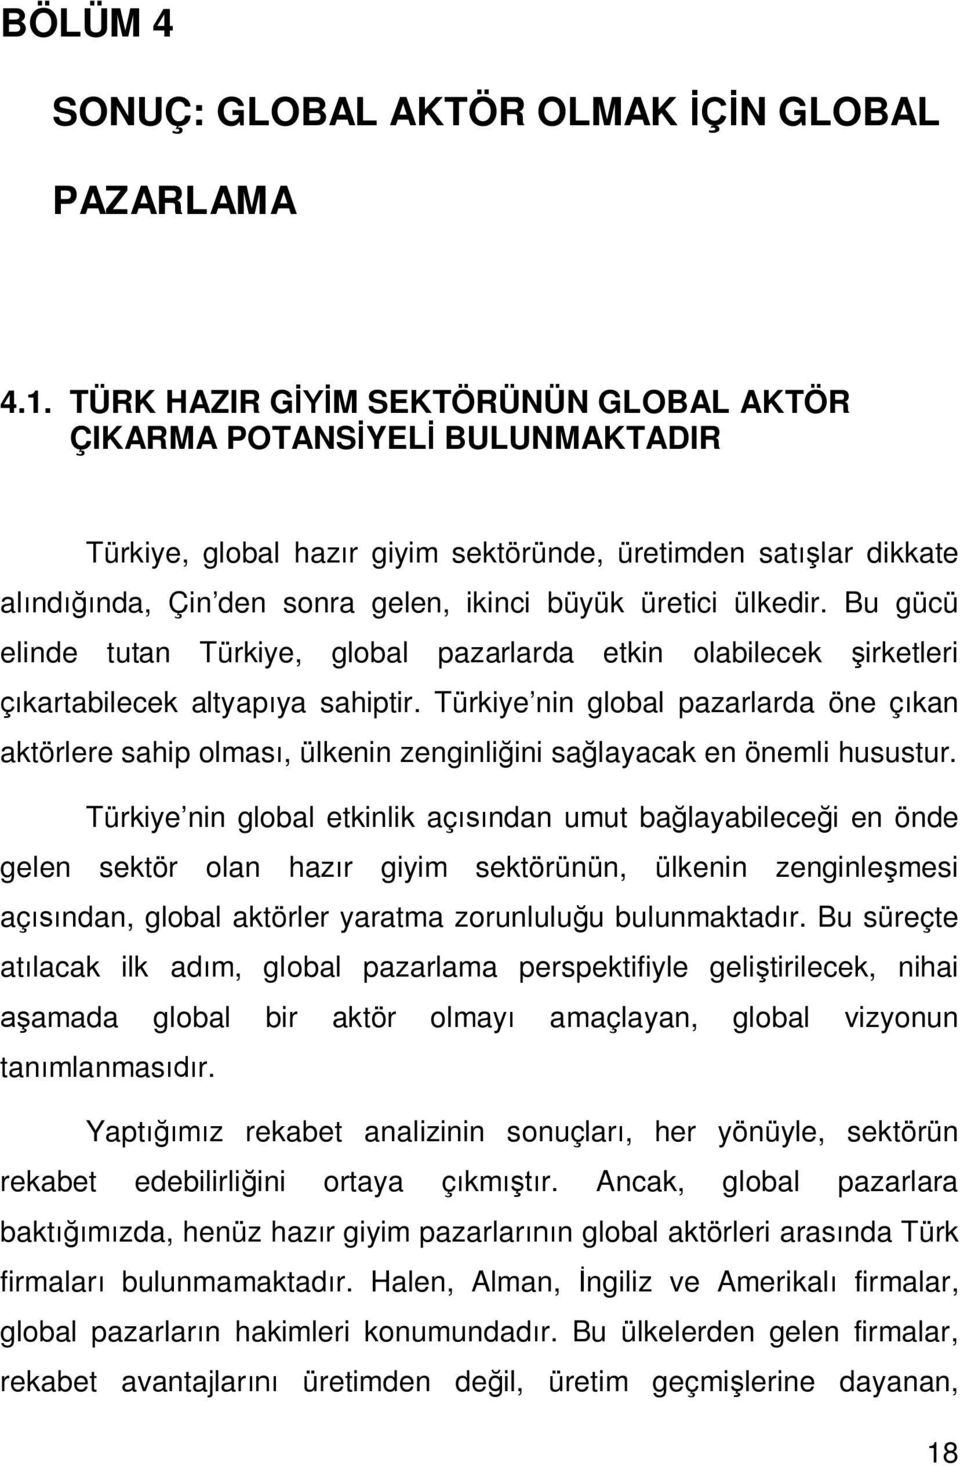 Bu gücü elinde tutan Türkiye, global pazarlarda etkin olabilecek irketleri kartabilecek altyap ya sahiptir.